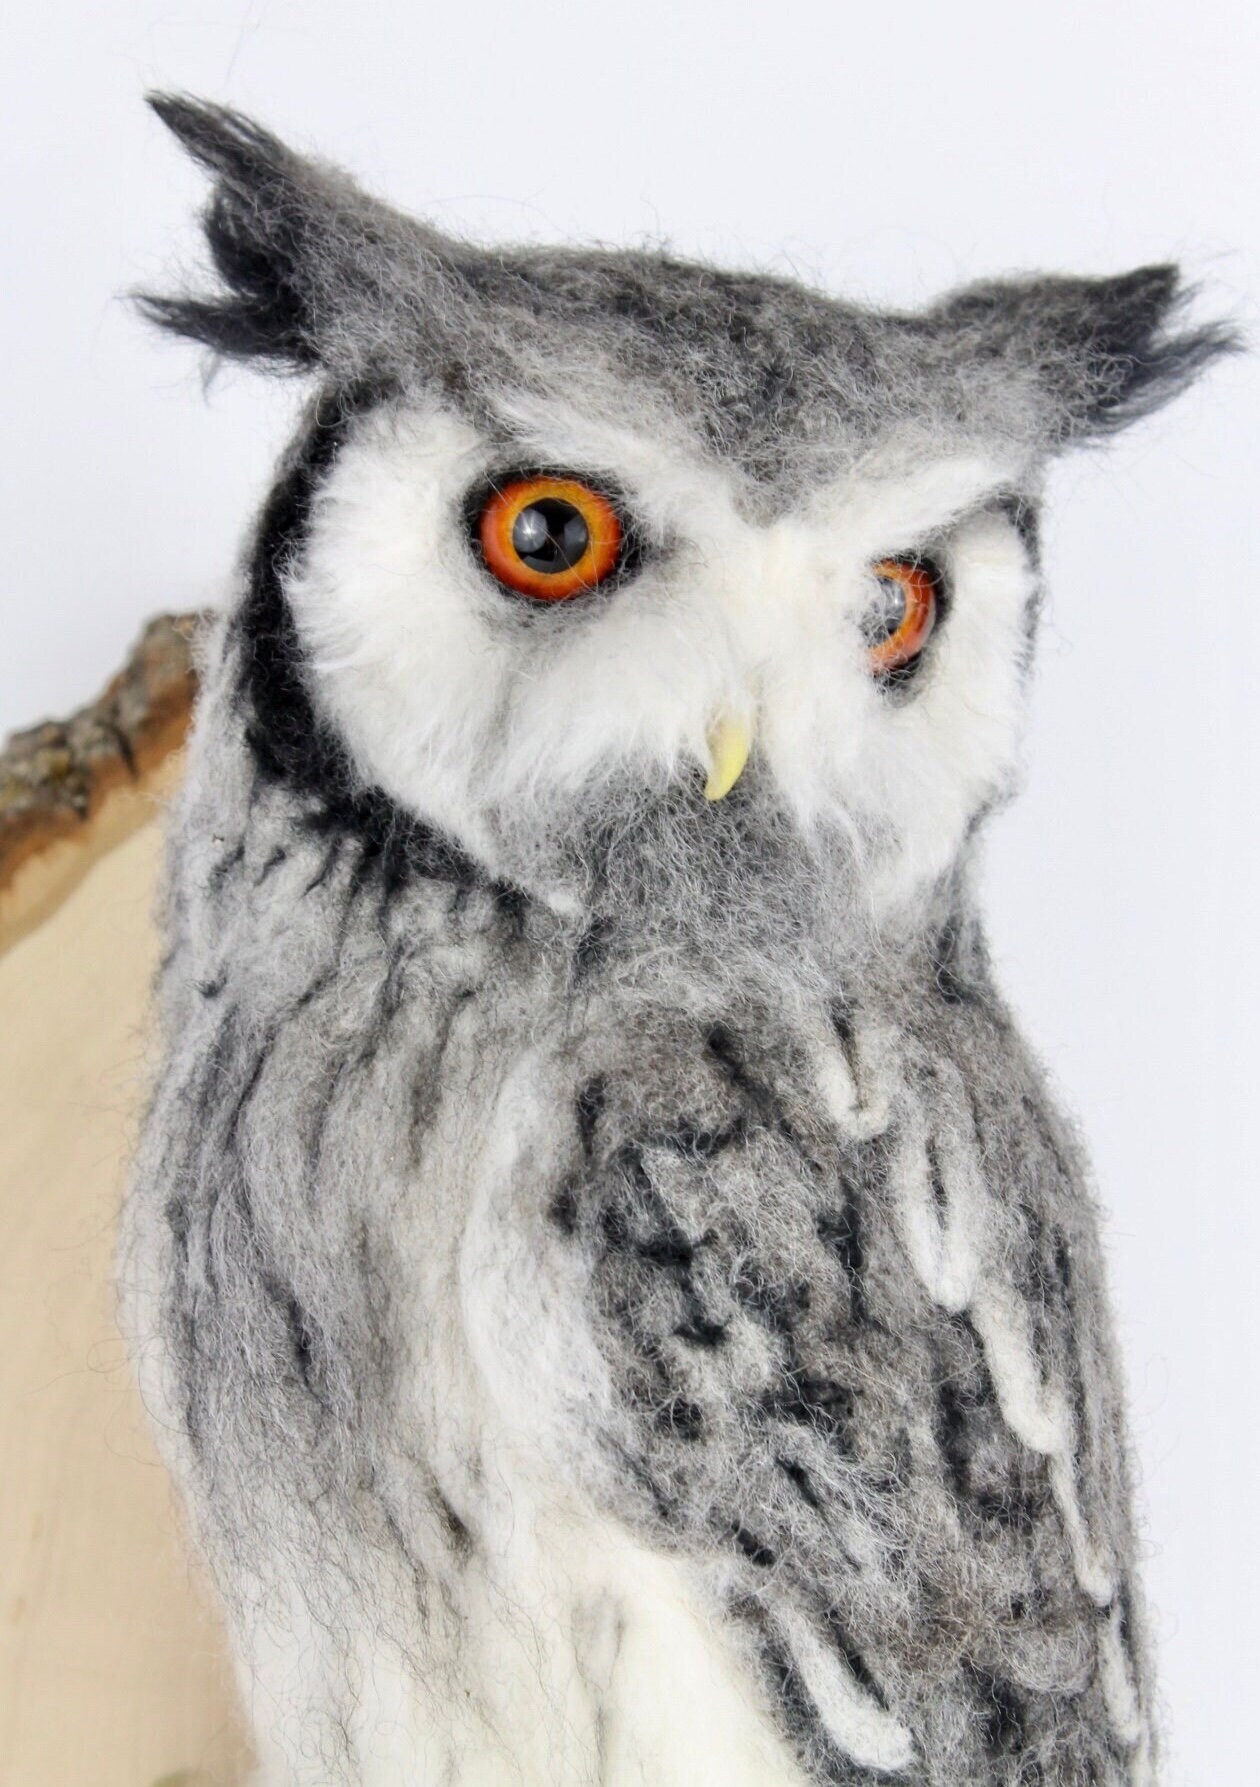 Kit: Barn Owlet Needle Felt Kit, DIY Craft Kit, Felting Kit, Owl Felting  Kit, Beginner Level 